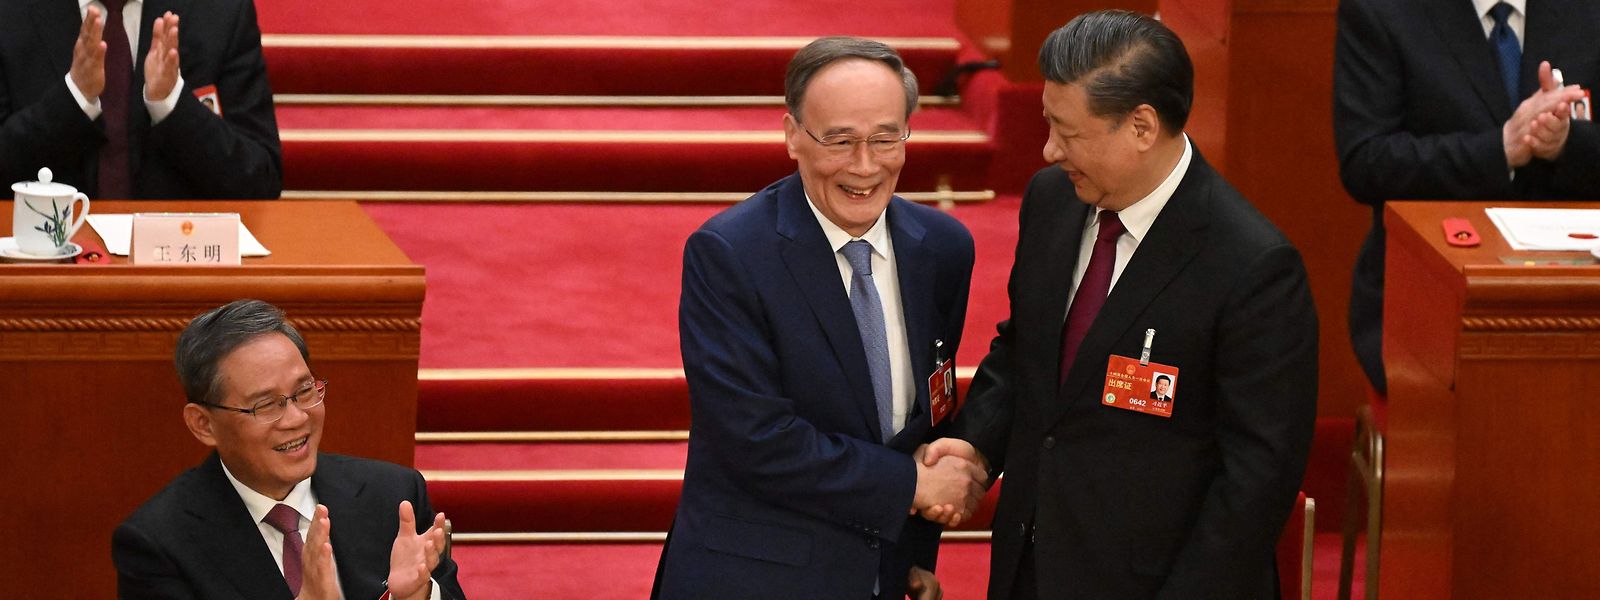 Xi Jinping (r.) dankte dem scheidenden Vizepräsidenten Wang Qishan.